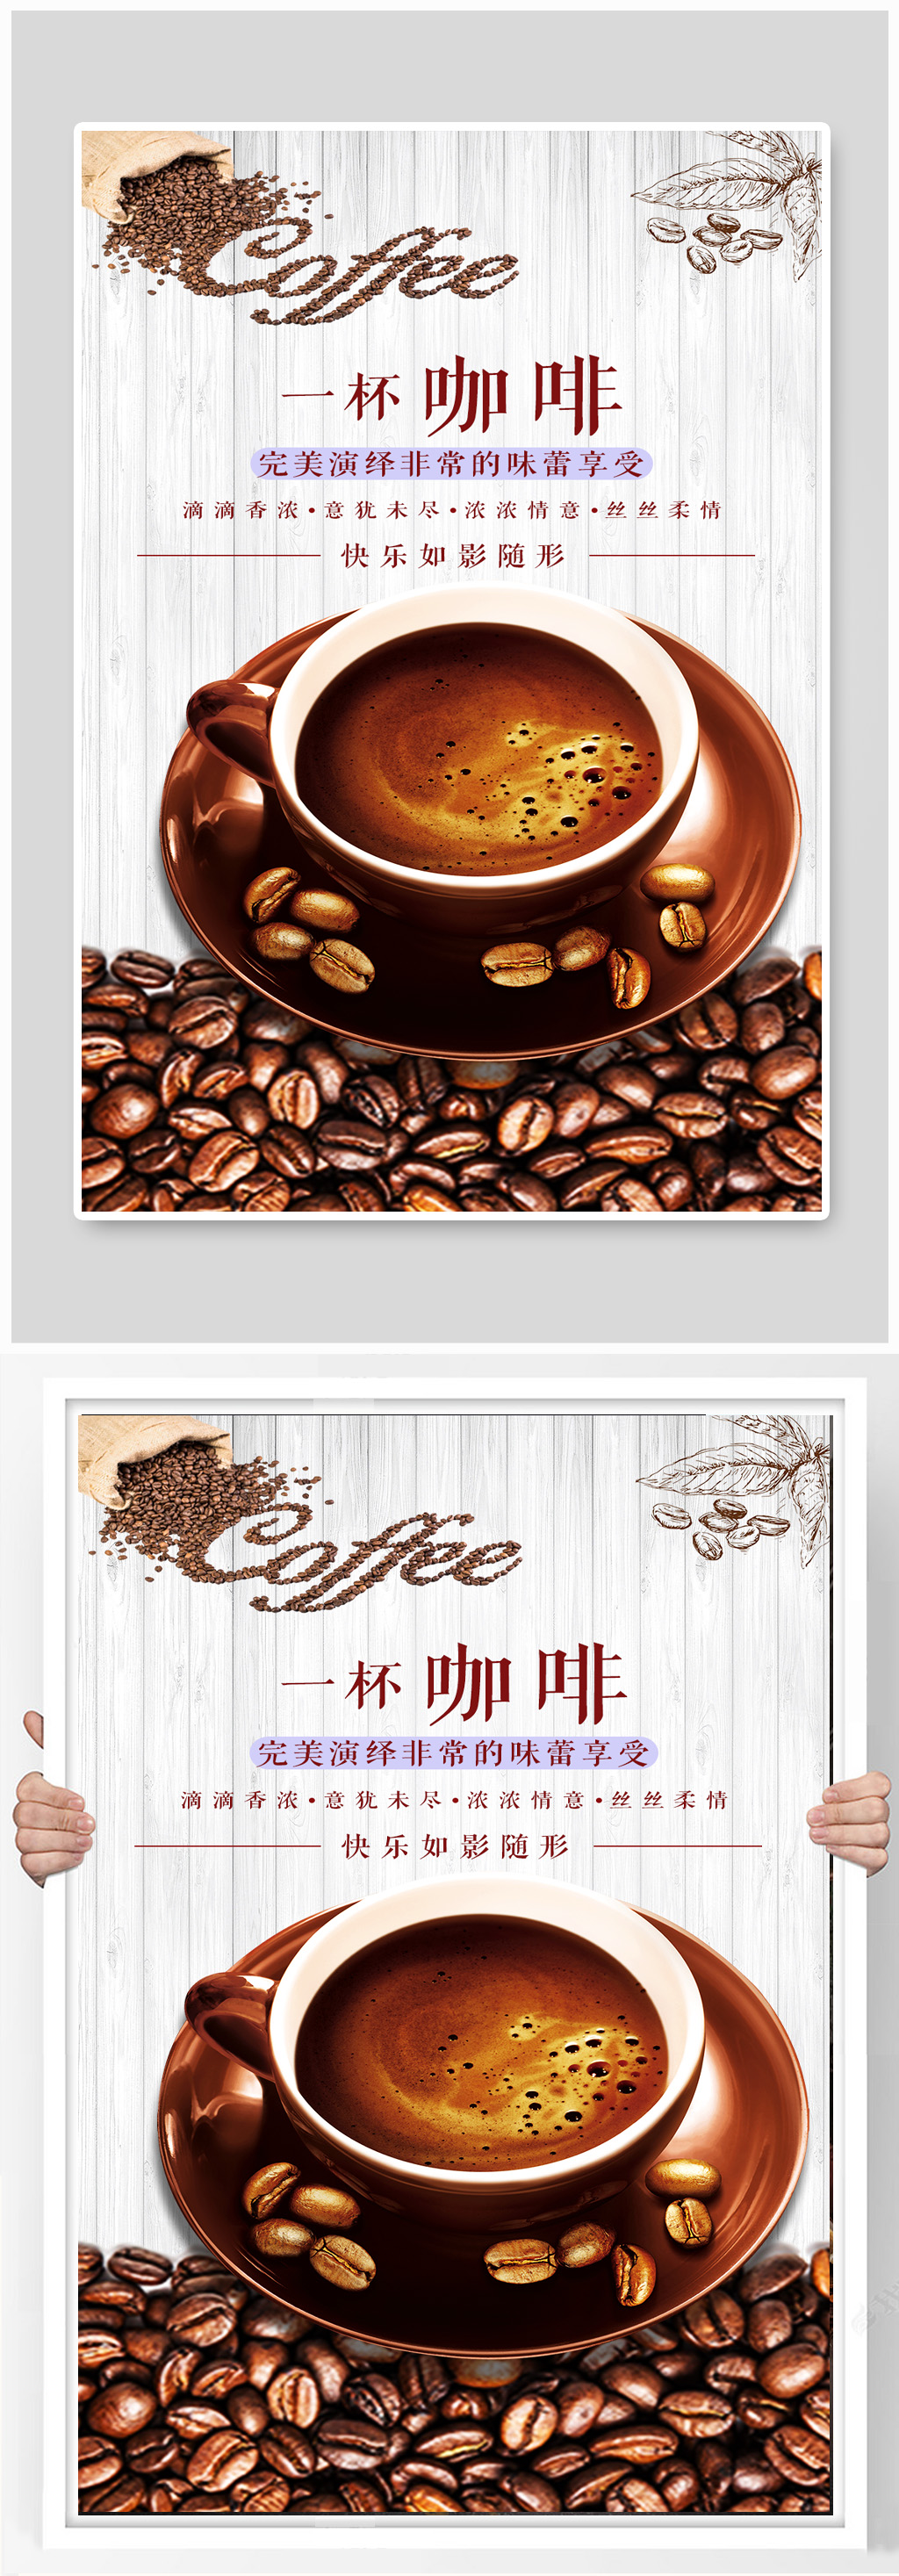 咖啡居中排版海报设计